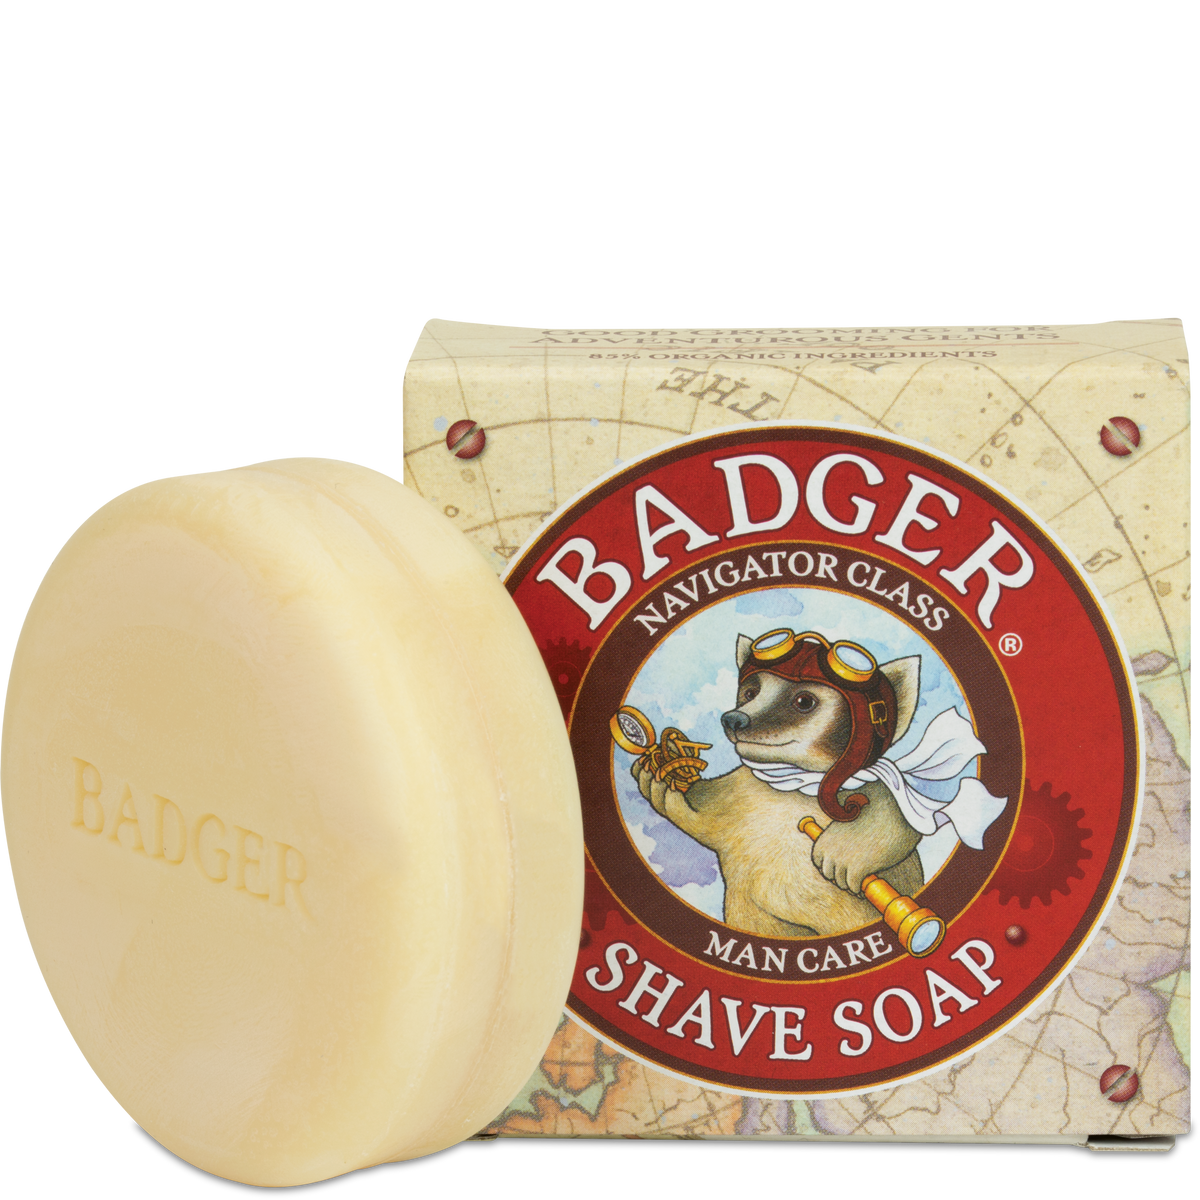 Badger Shave Soap